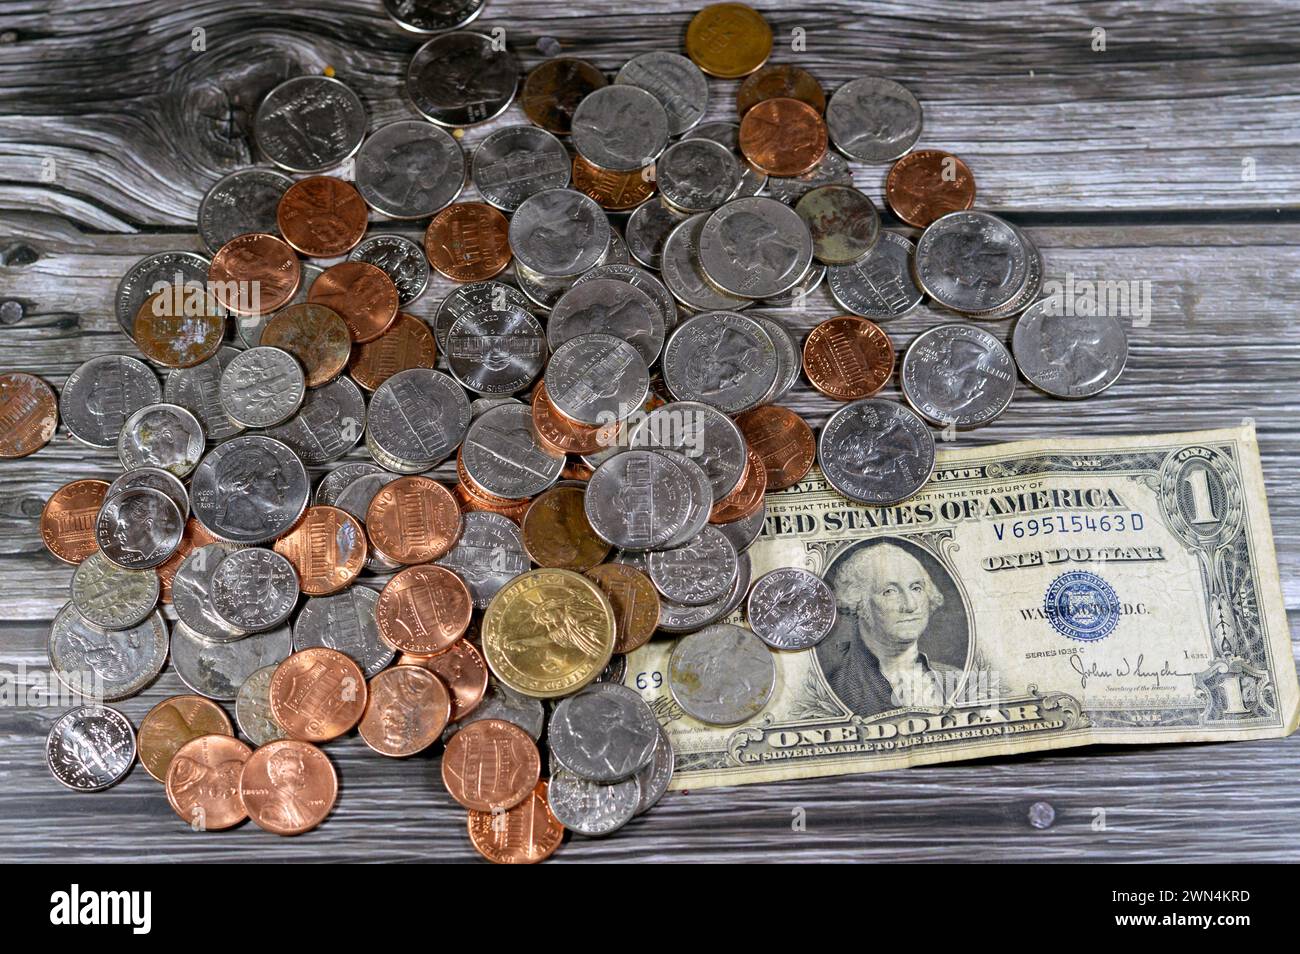 USD monete americane 1 cent, 5, 10, 25 centesimi trimestre, un dollaro, moneta americana d'epoca retrò di una banconota da 1935 dollari americani con Geor Foto Stock